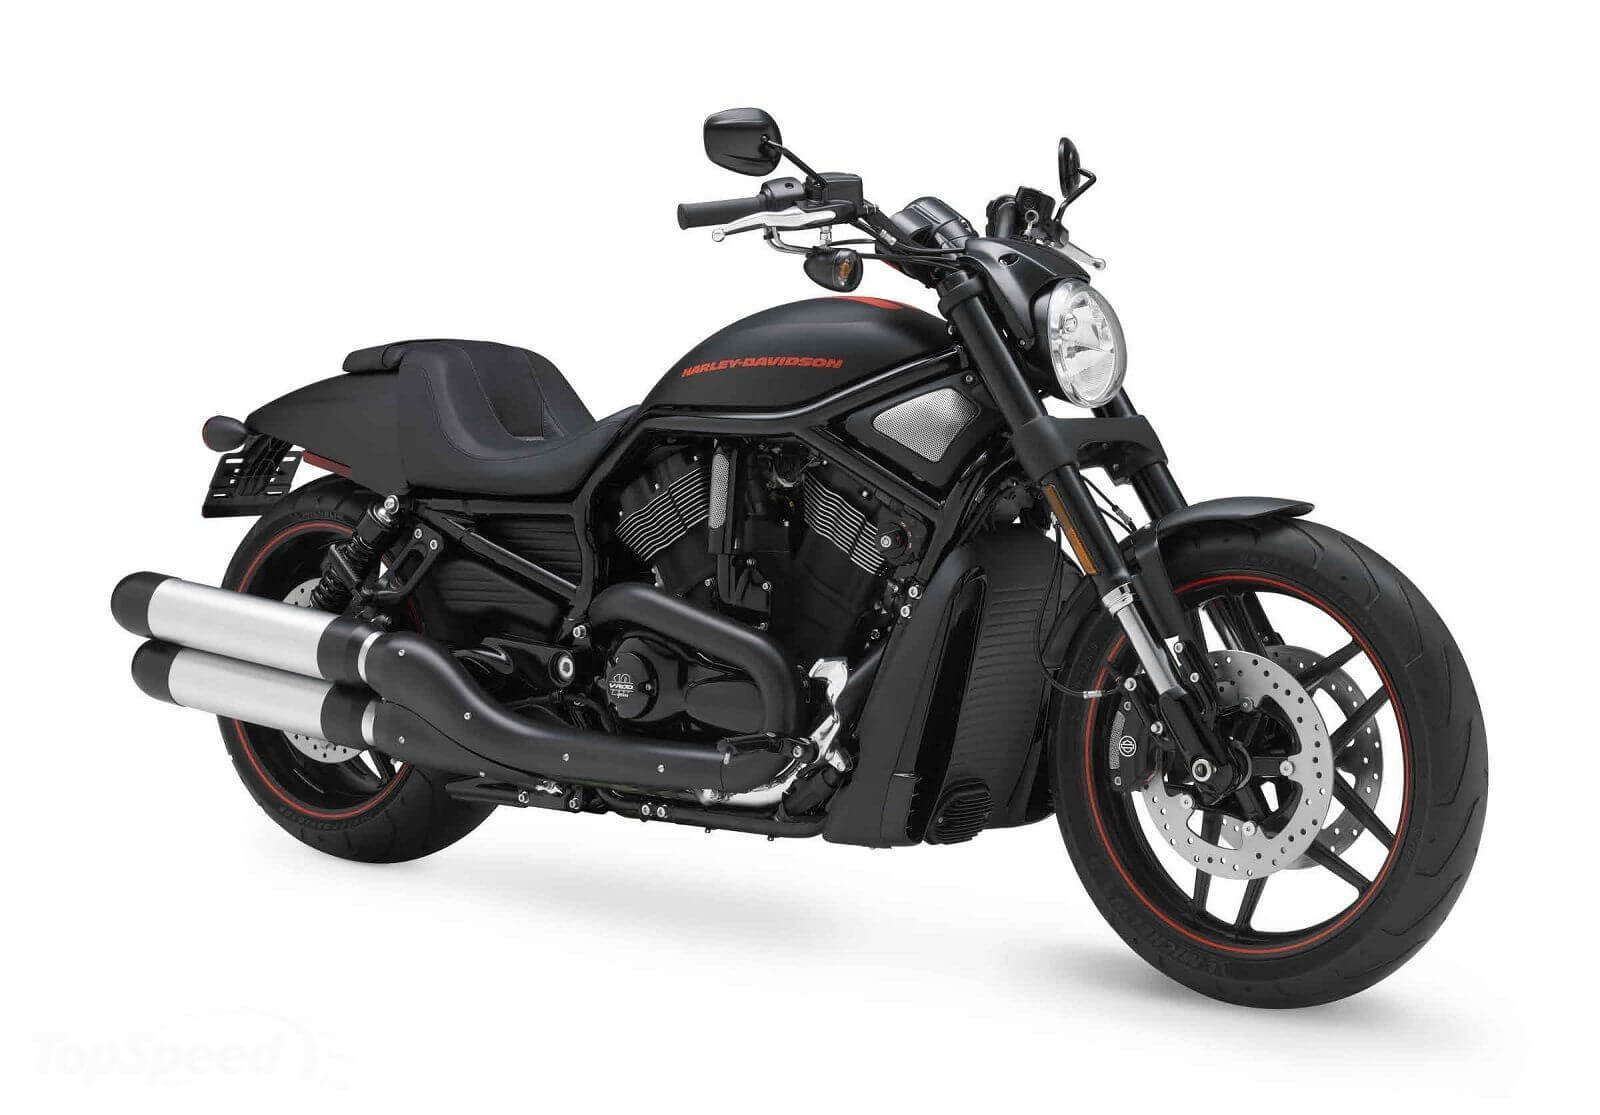 Seguro De Moto Harley Davidson Veja Os Modelos Precos E Os Melhores Seguros